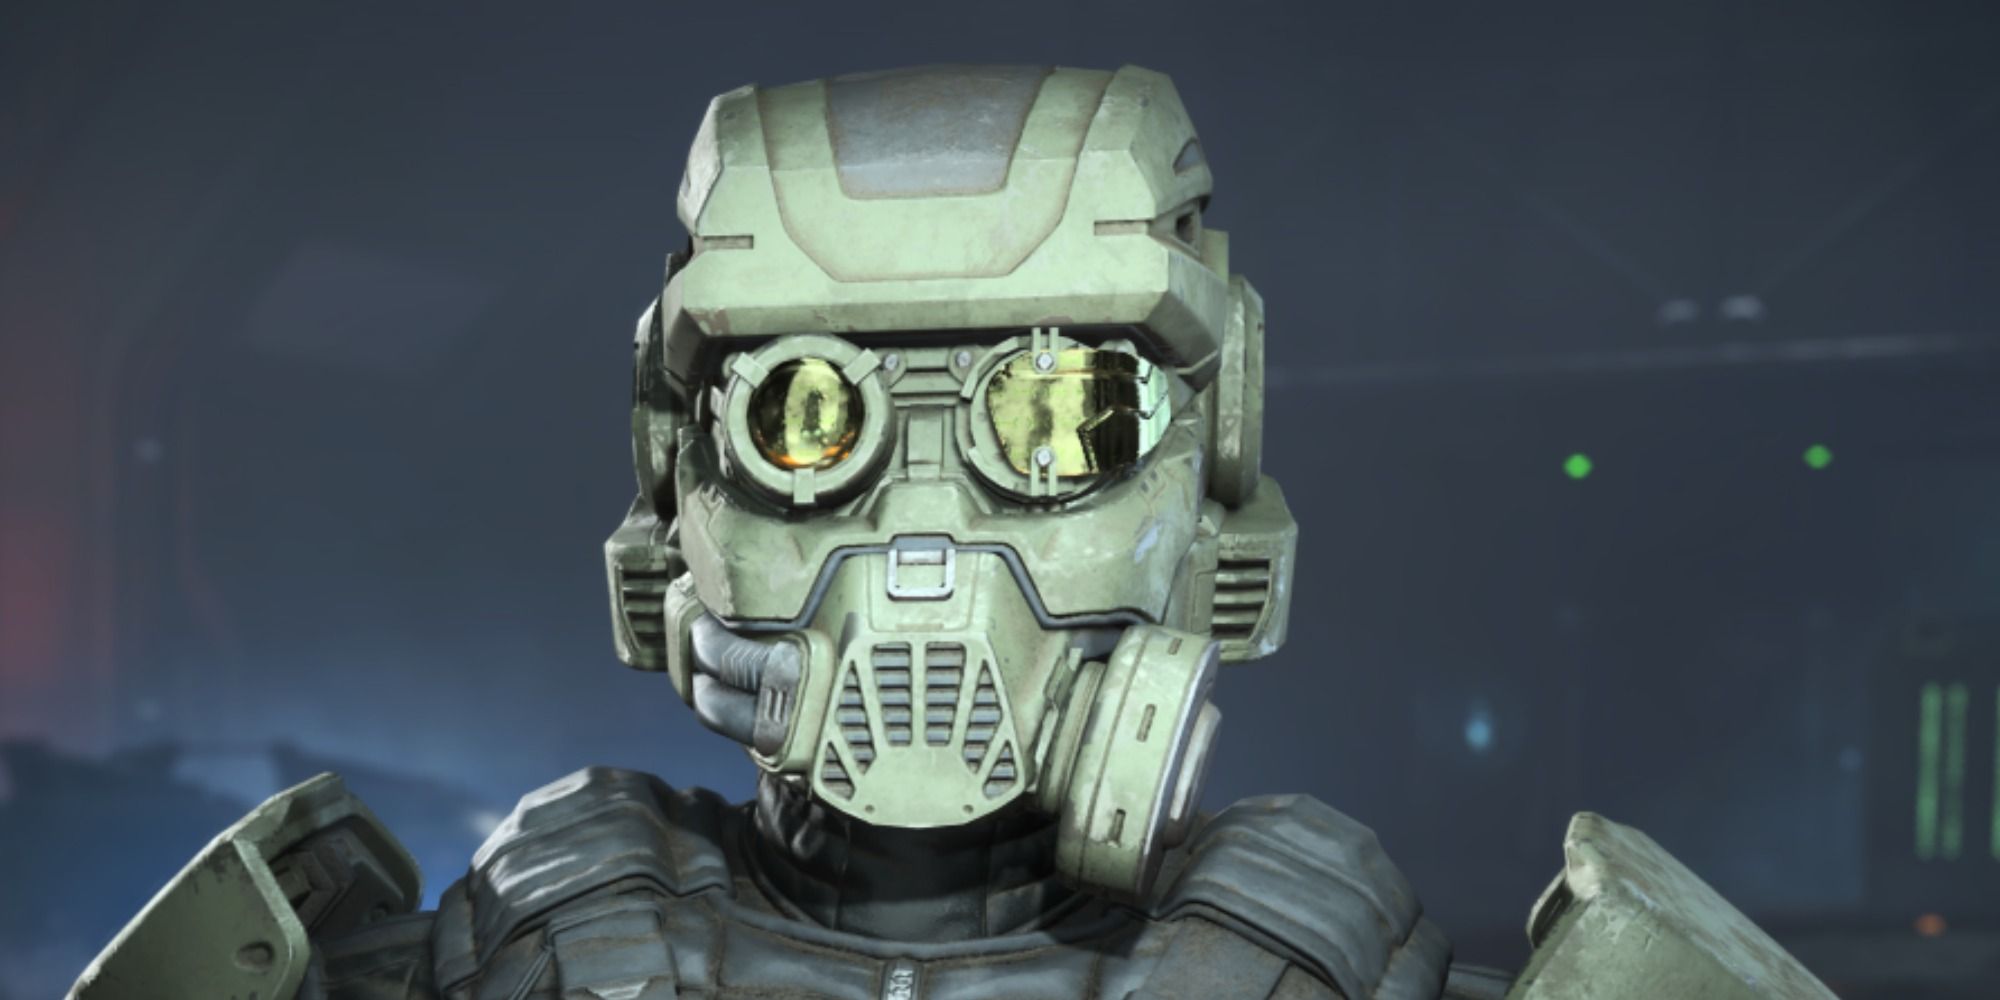 The Akis II - GRD Helmet in Halo Infinite